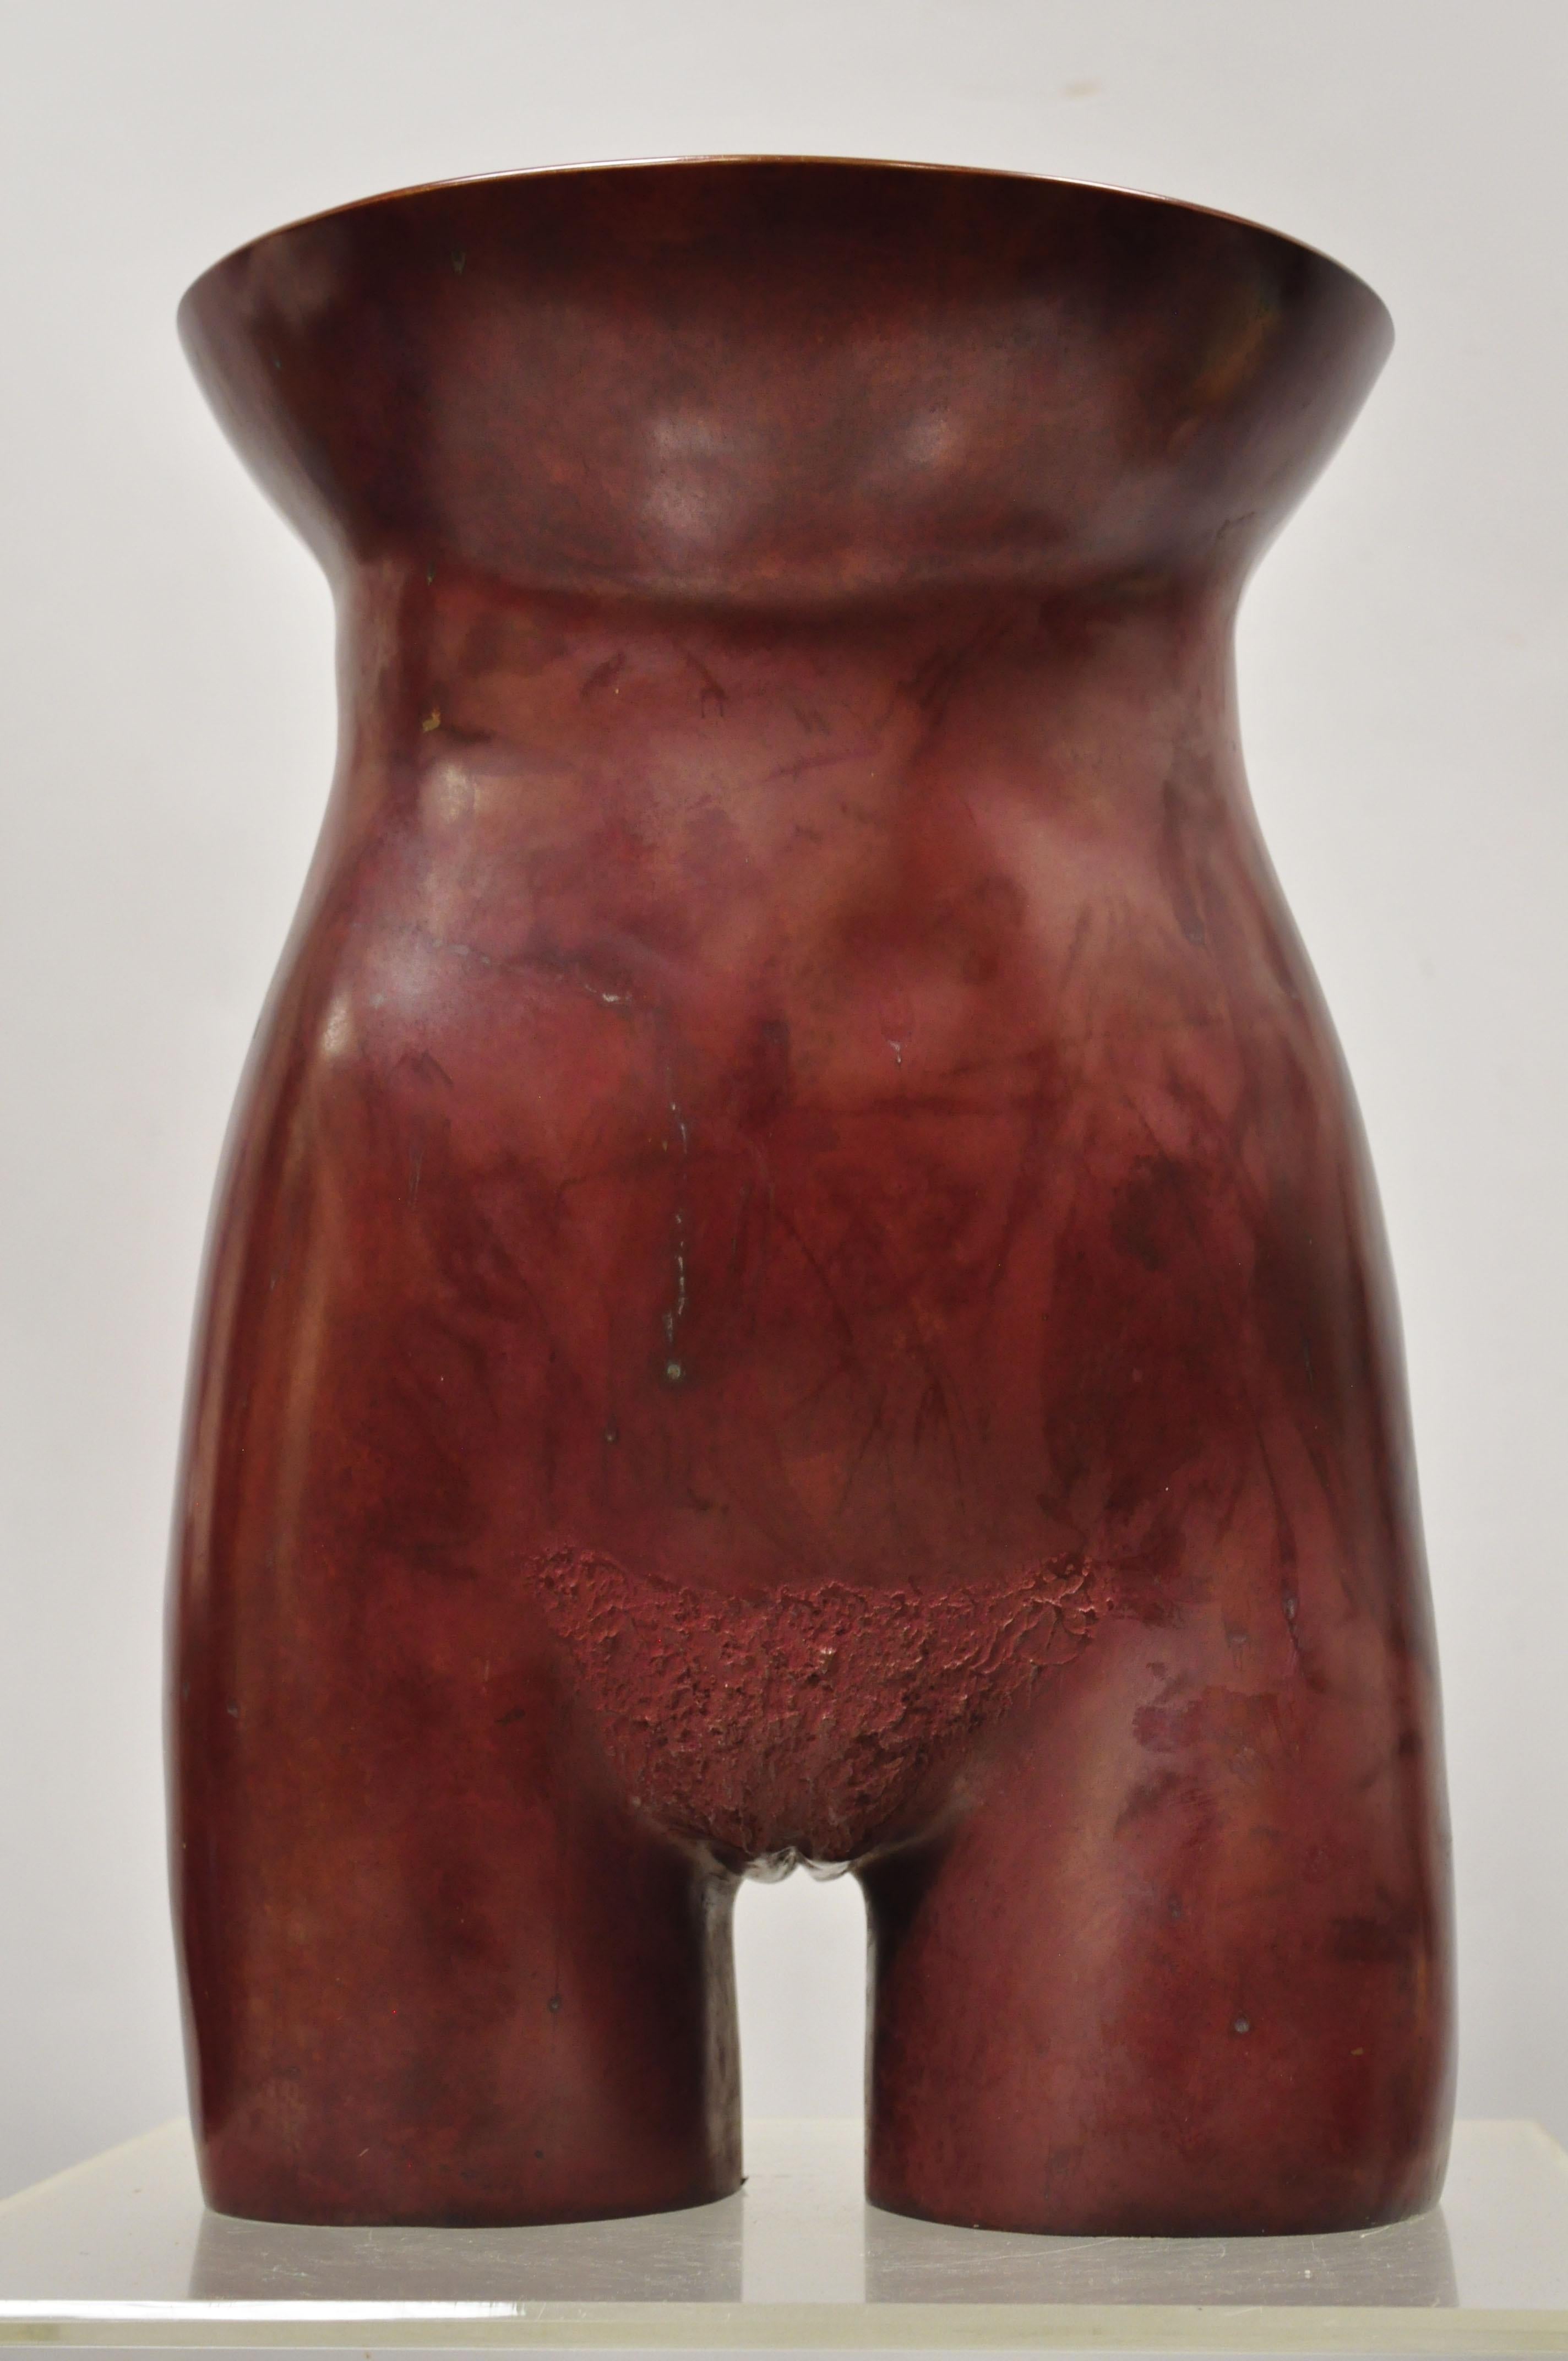 Gary Spradling (1951-2006) sculpture d'art en bronze, torse nu de femme, rouge bruni. L'objet se caractérise par une construction en bronze lourd, signé 